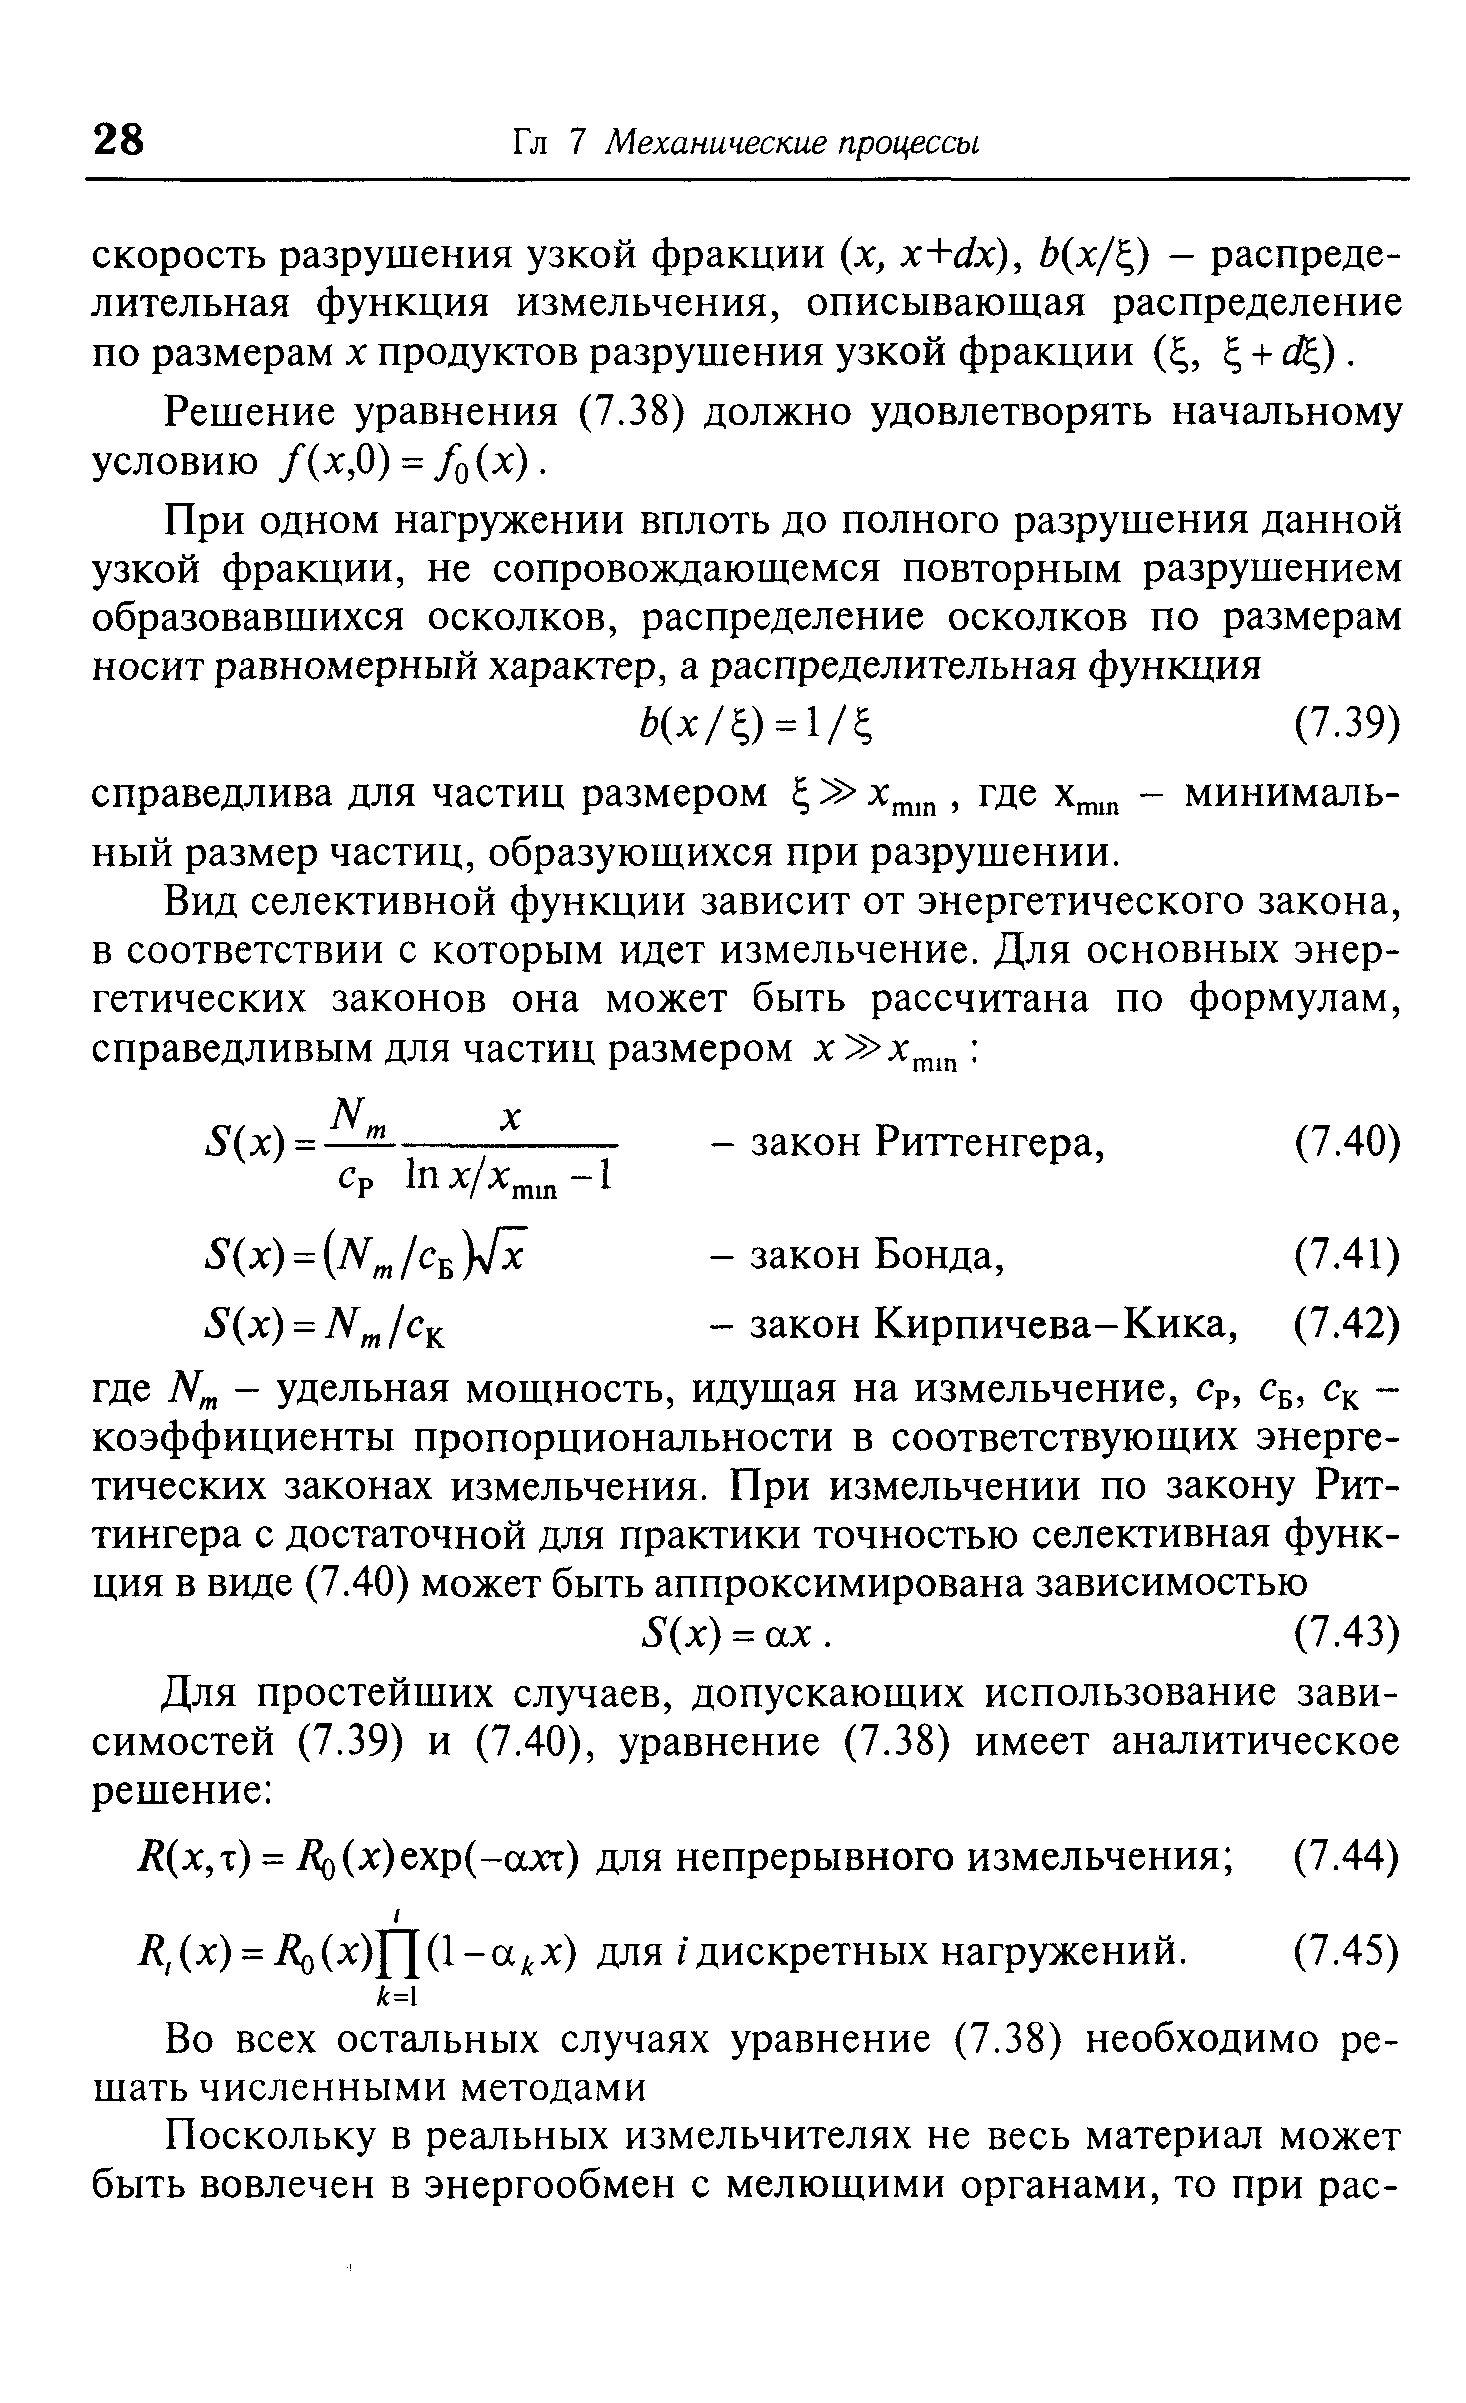 Решение уравнения (7.38) должно удовлетворять начальному условию /(х,0) = /о(х).